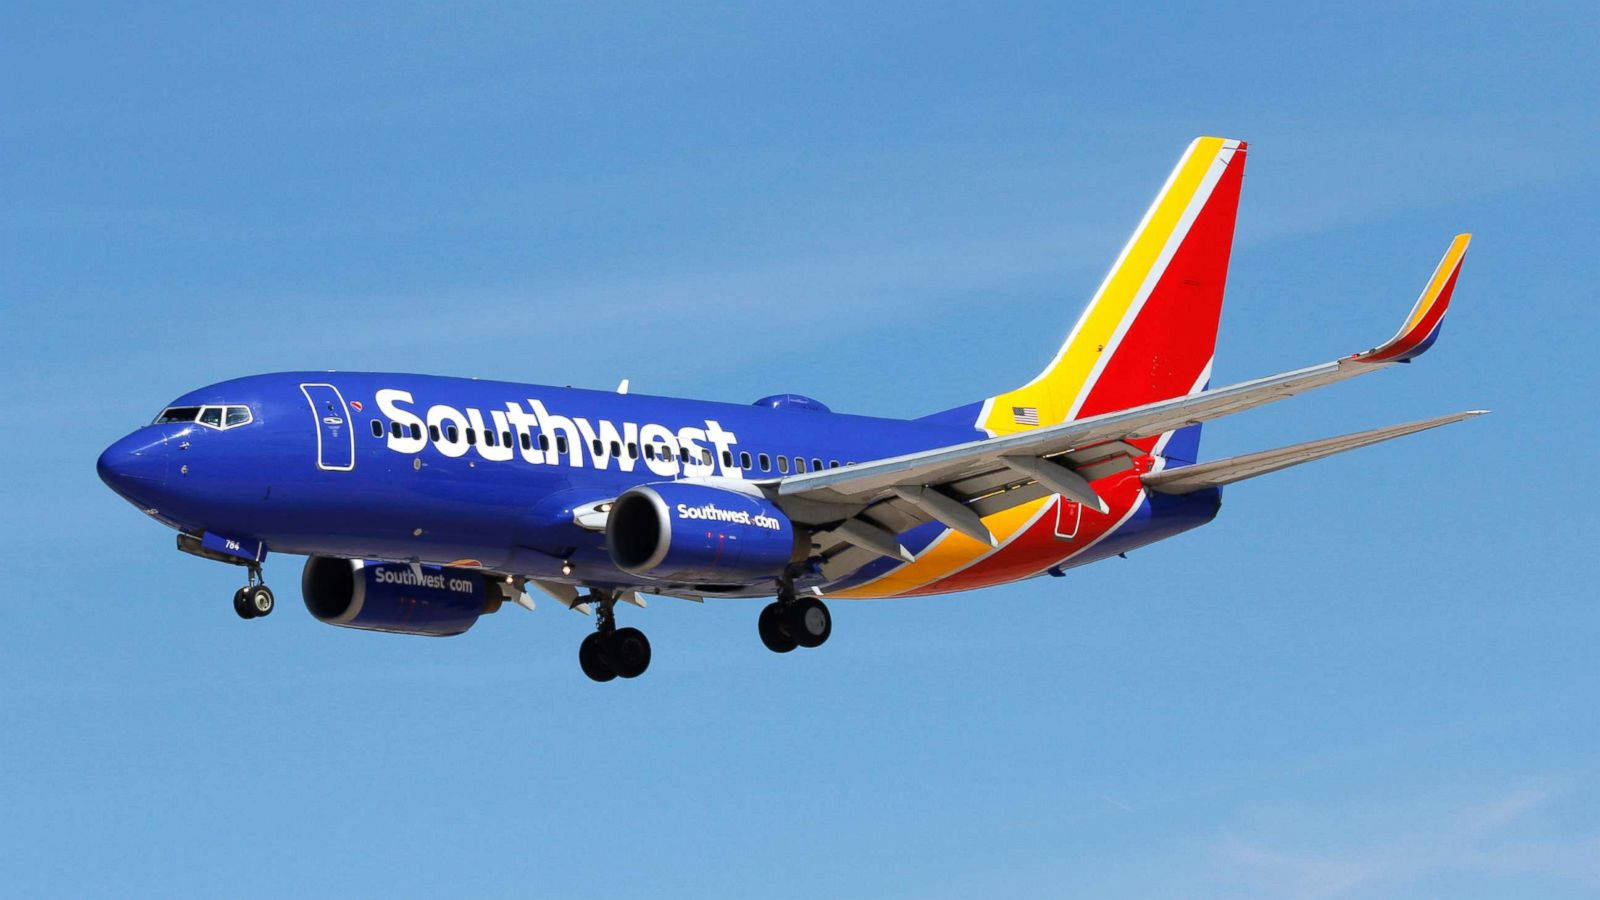 Aviónde Southwest Airlines En Un Cielo Azul. Fondo de pantalla